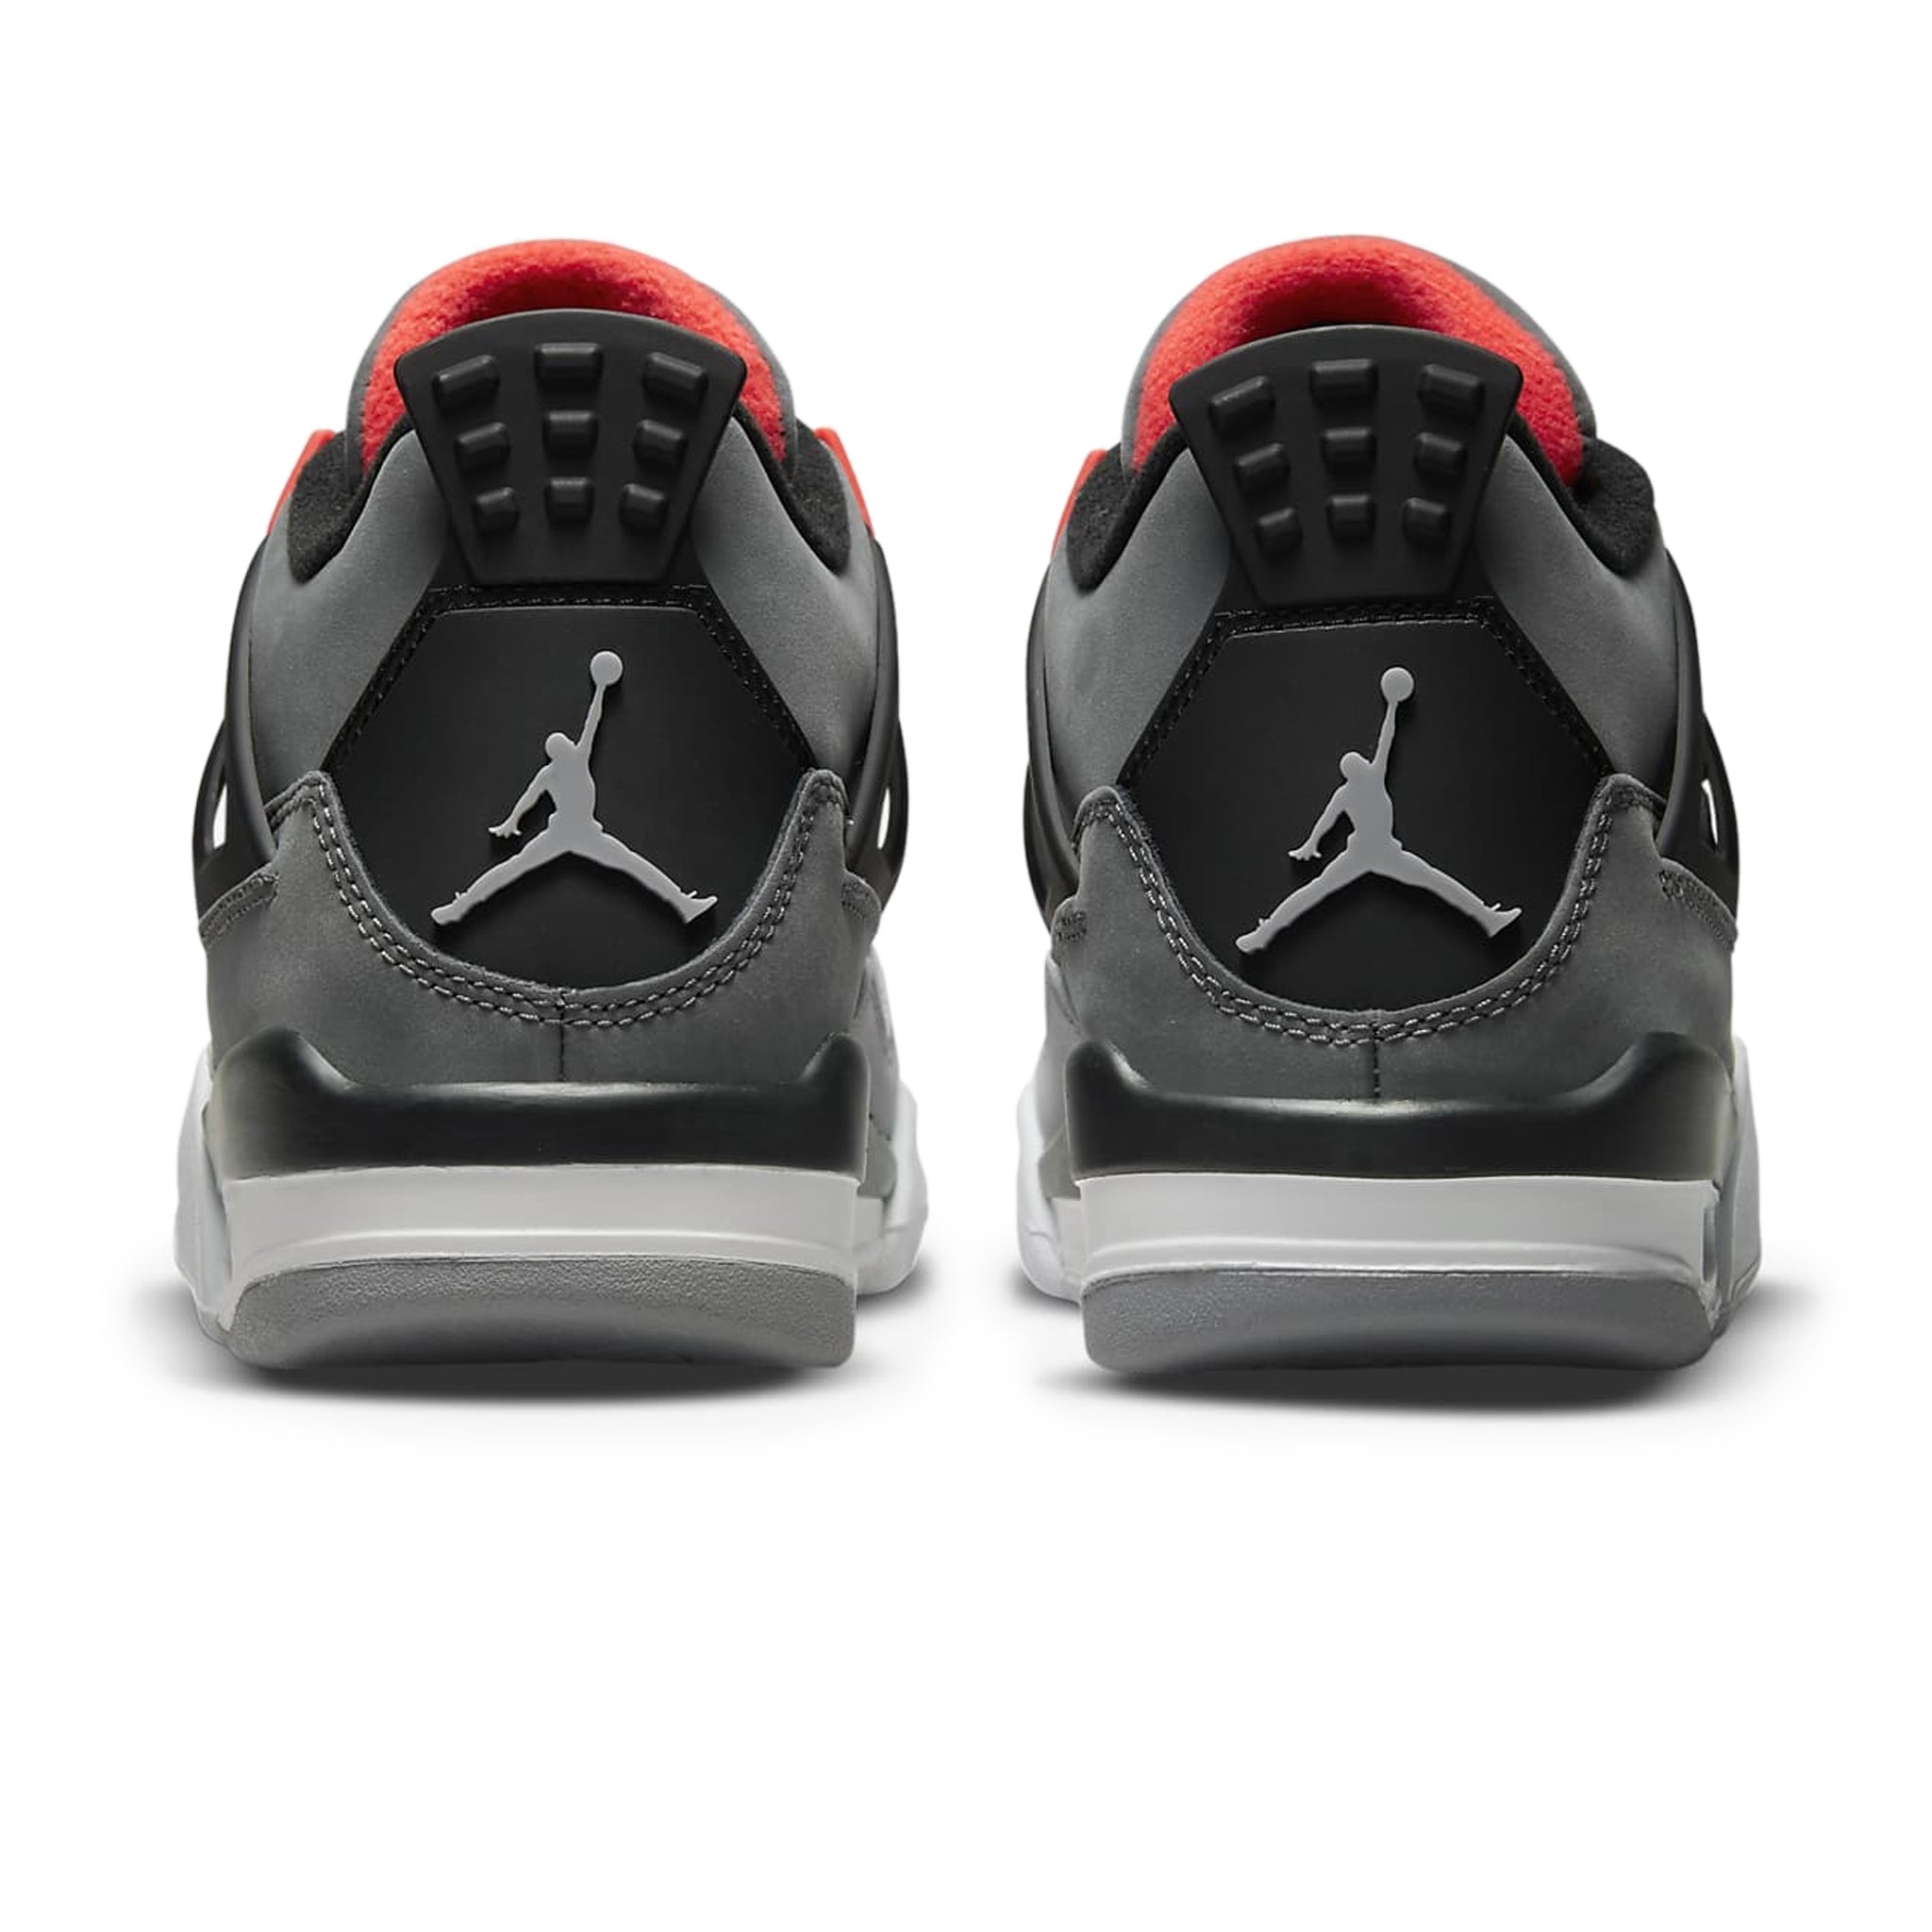 Heel view of Air Jordan 4 Retro Infrared (GS) 408452-061